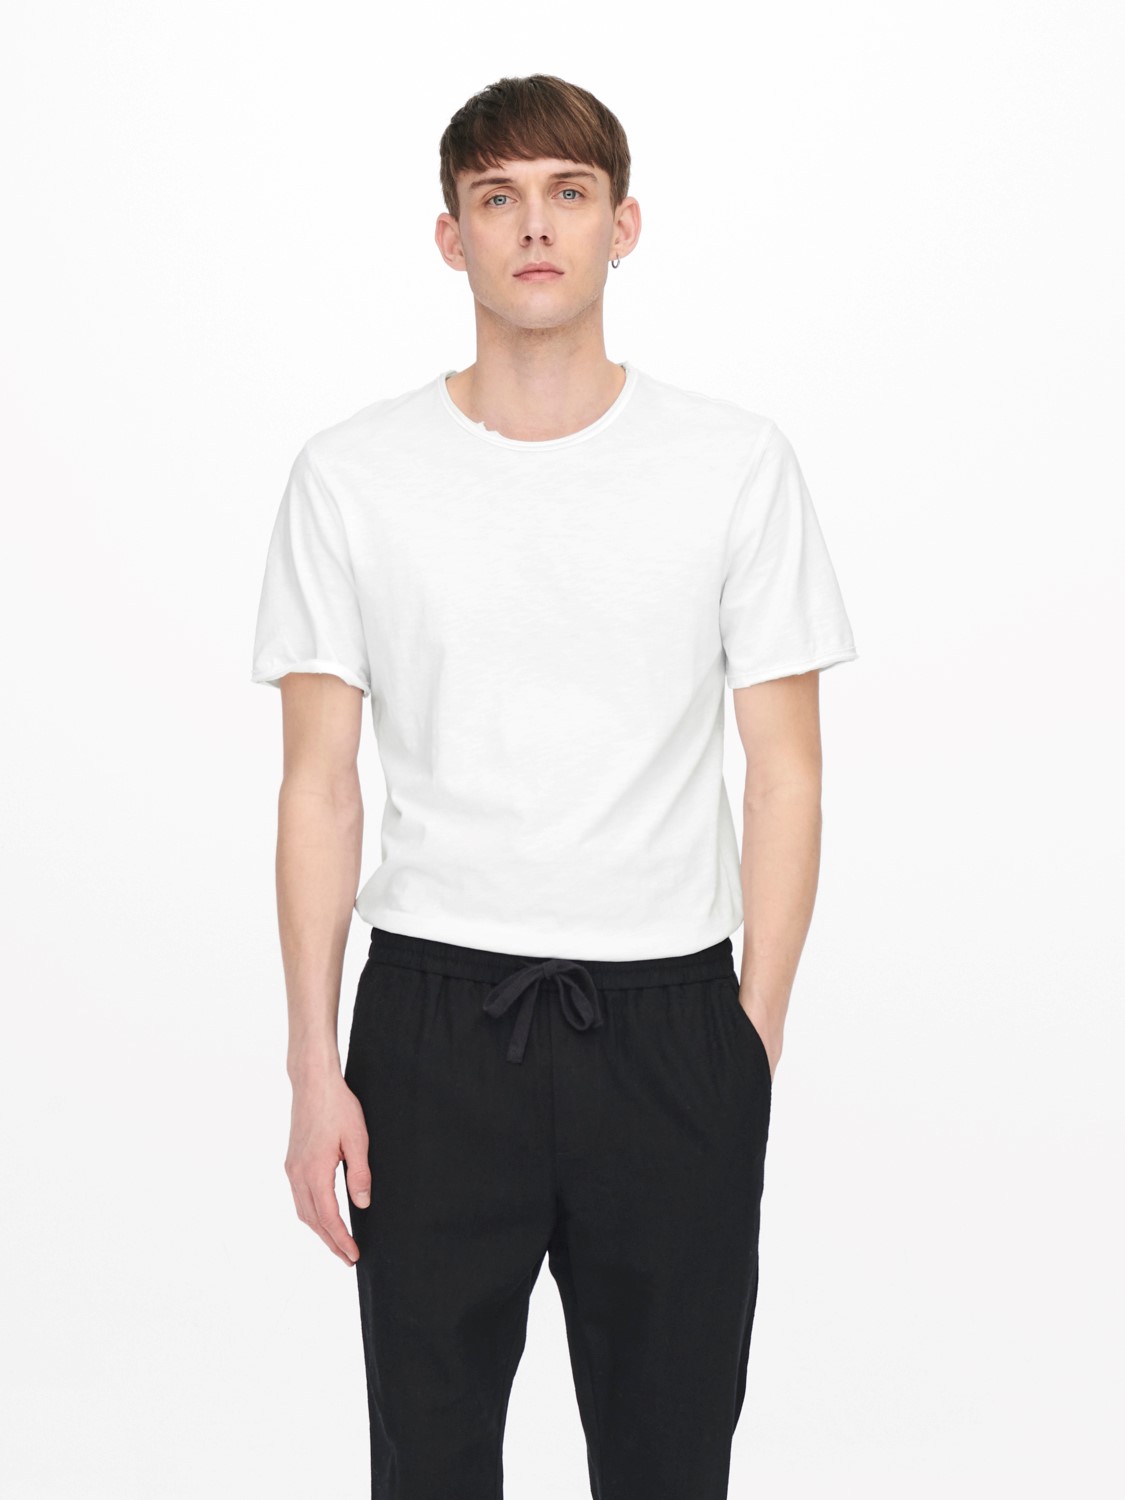 Se Benne Long Line Fit T-Shirt S/S - White Large hos monomen